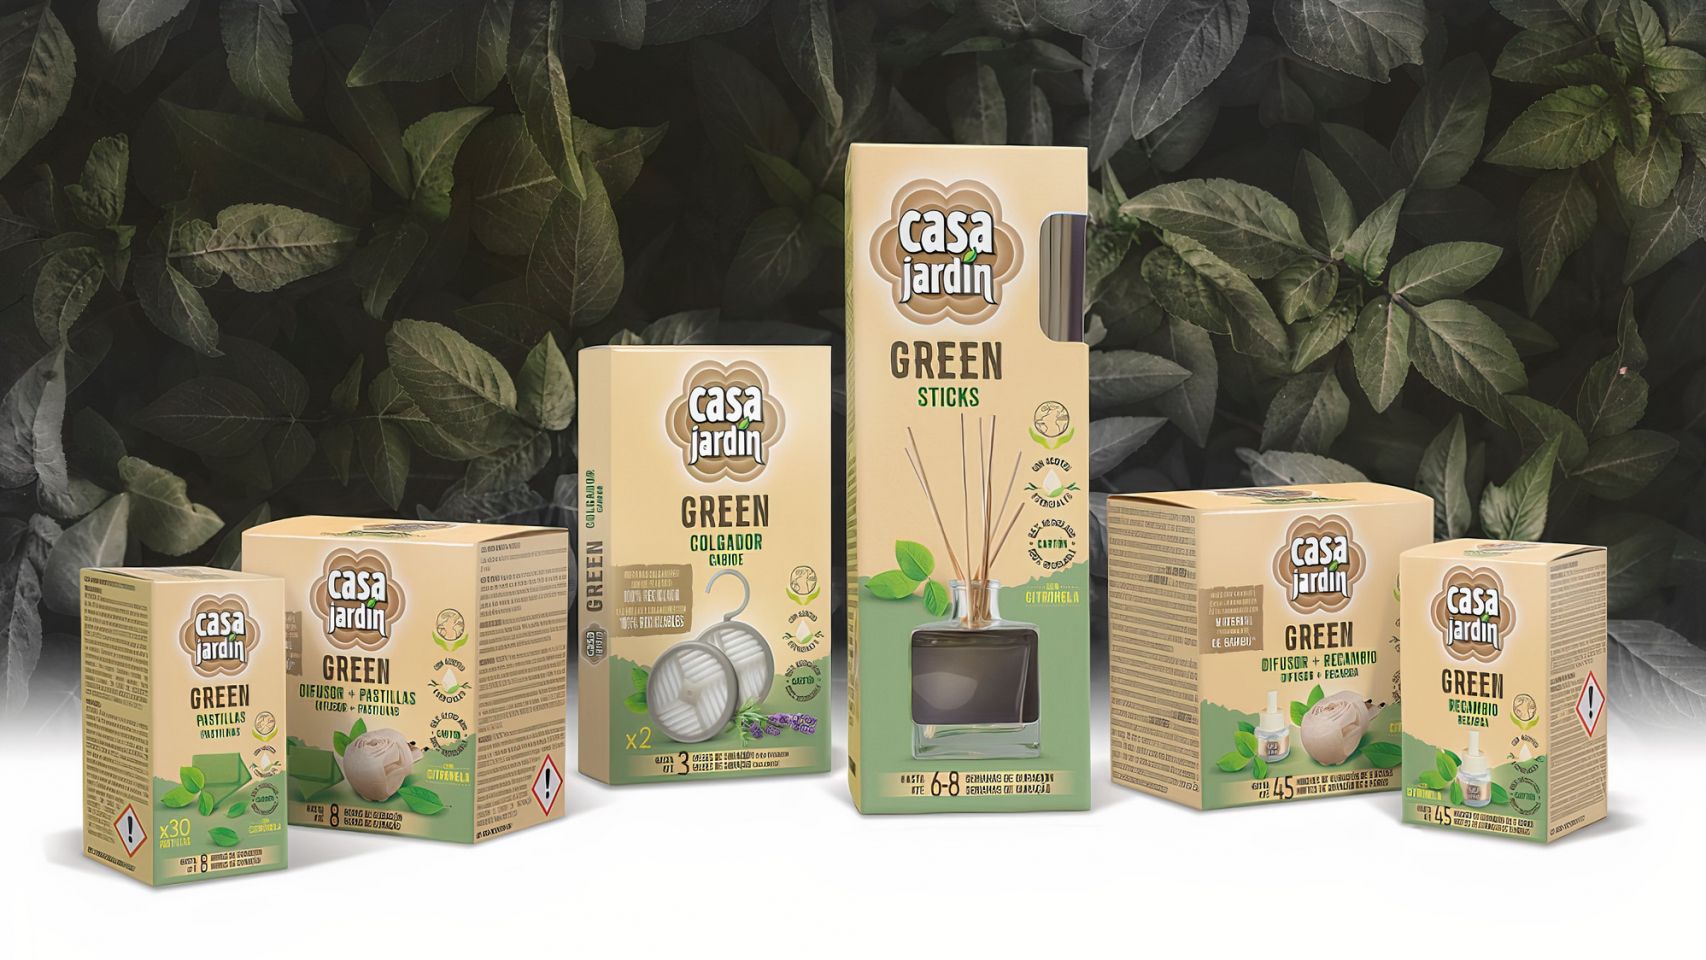 Nueva gama de productos ecológicos Casa Jardín Green.